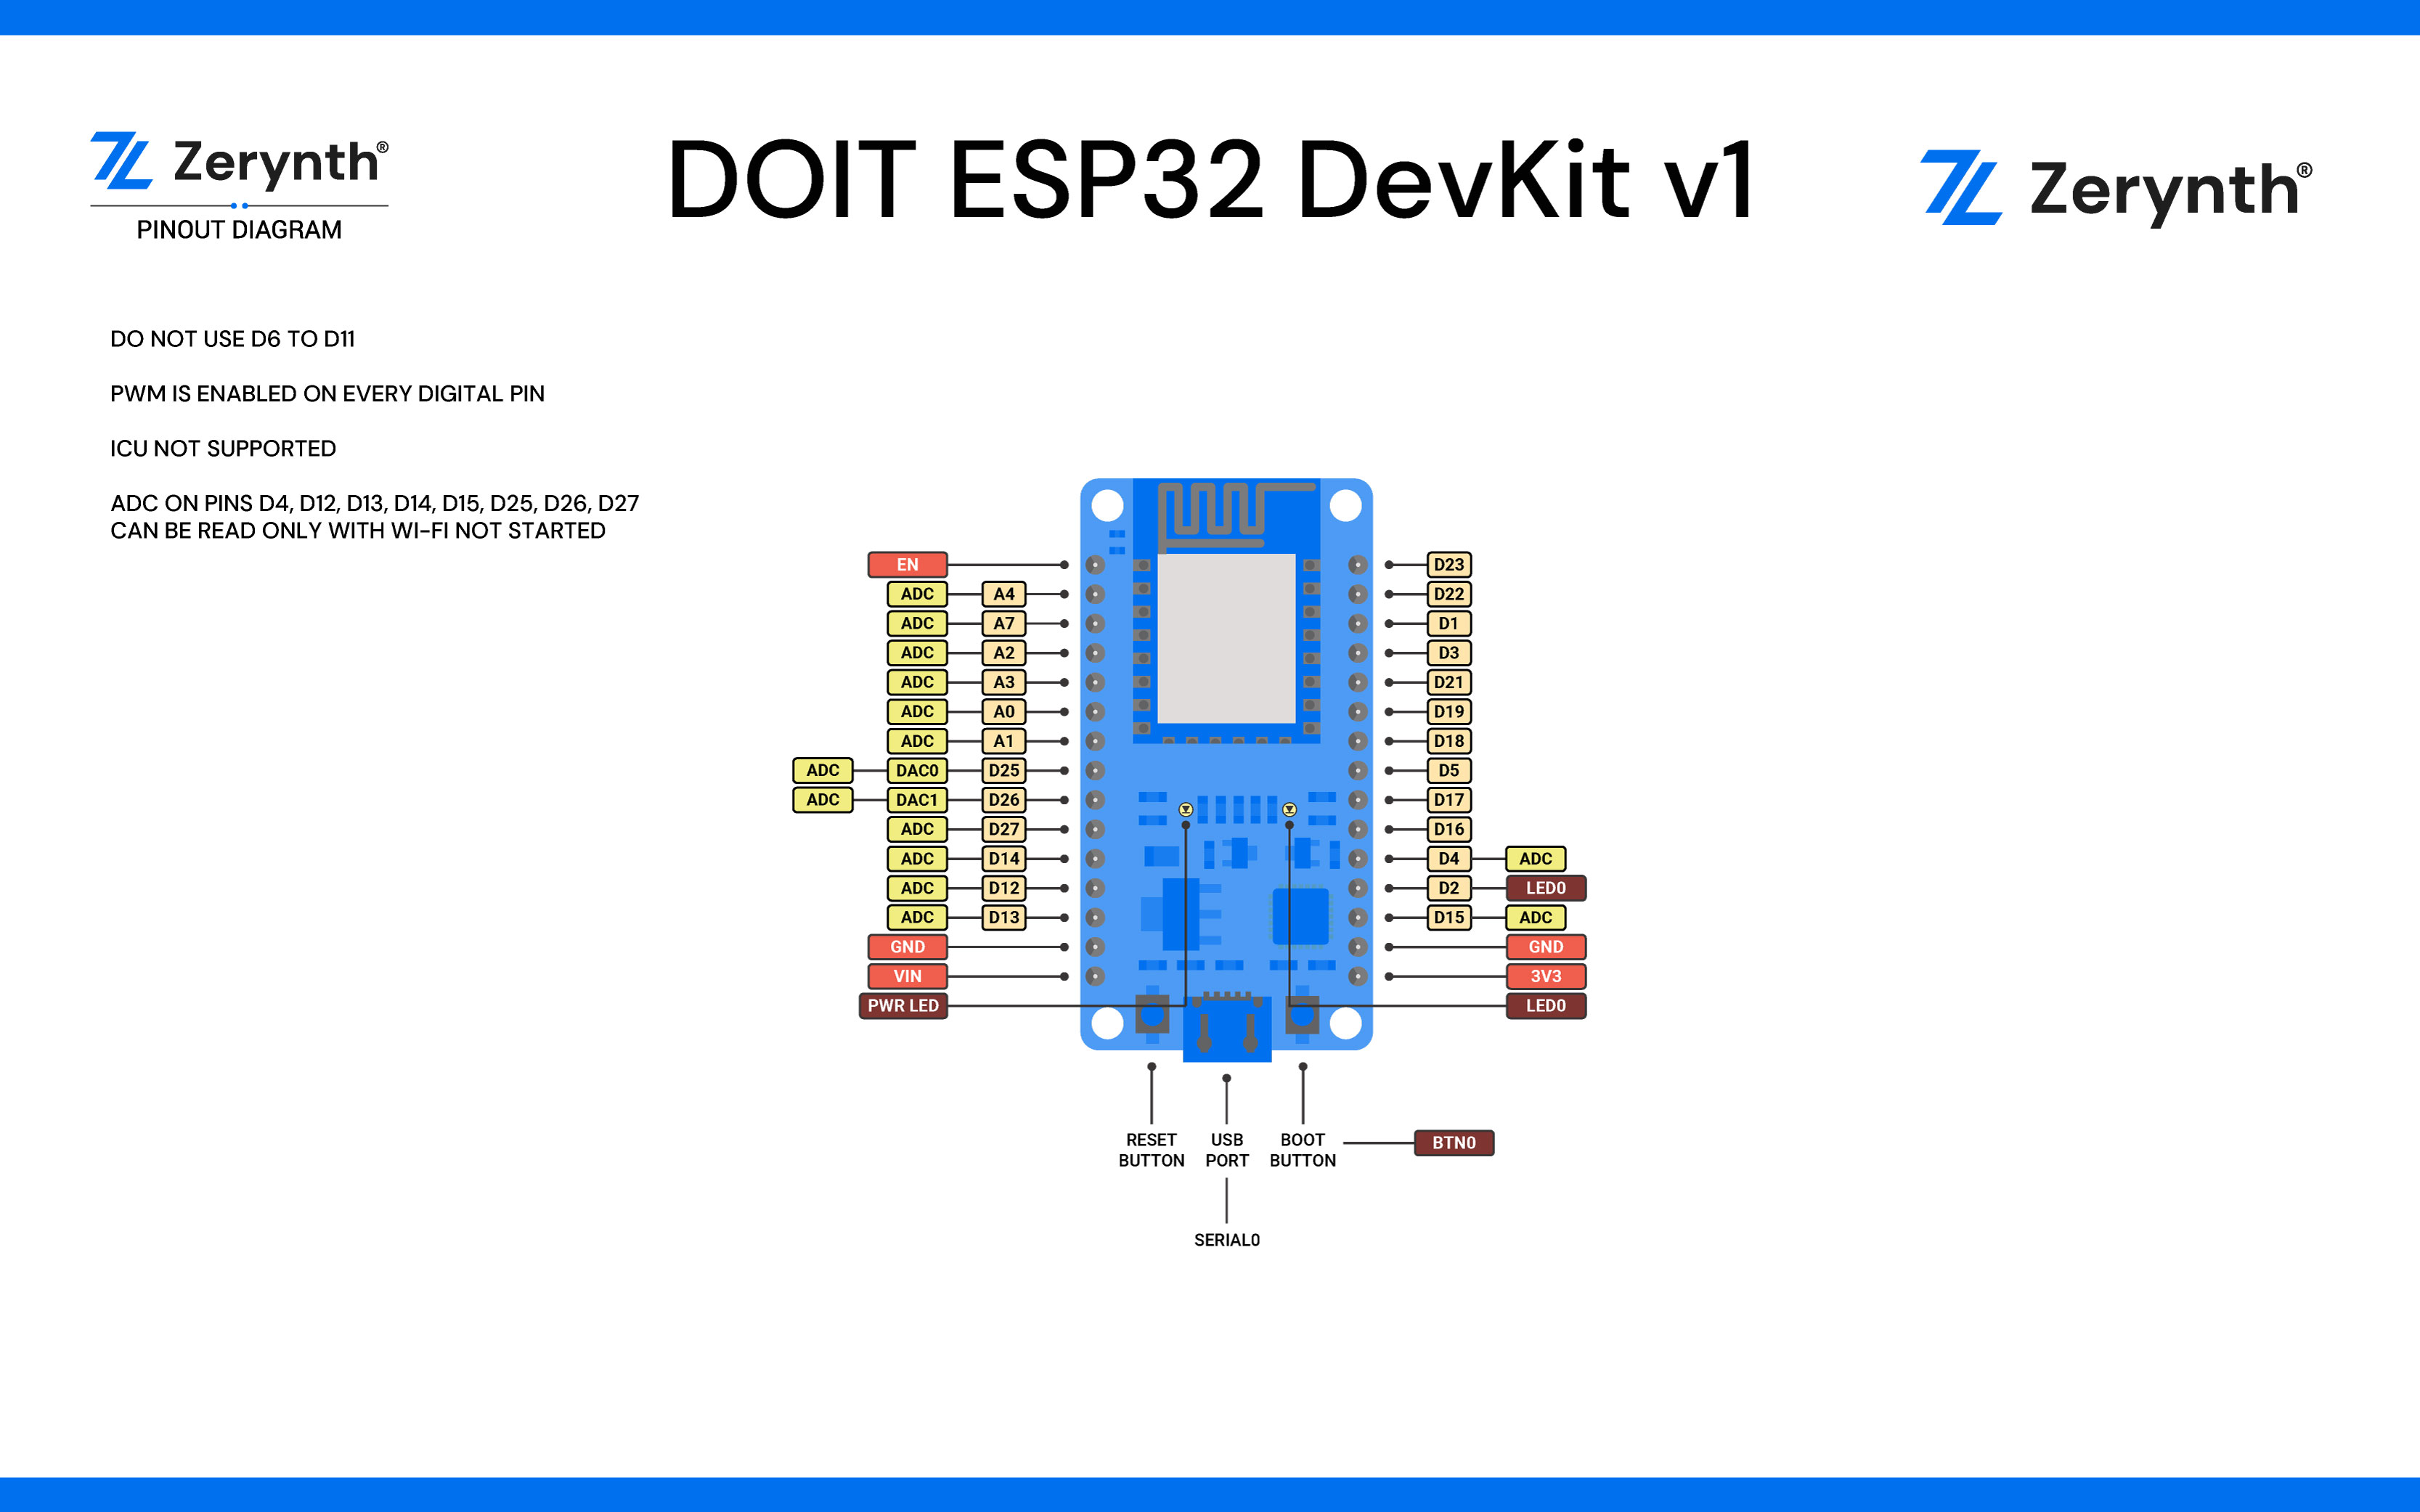 DOIT Esp32 DevKit v1 Pinmap